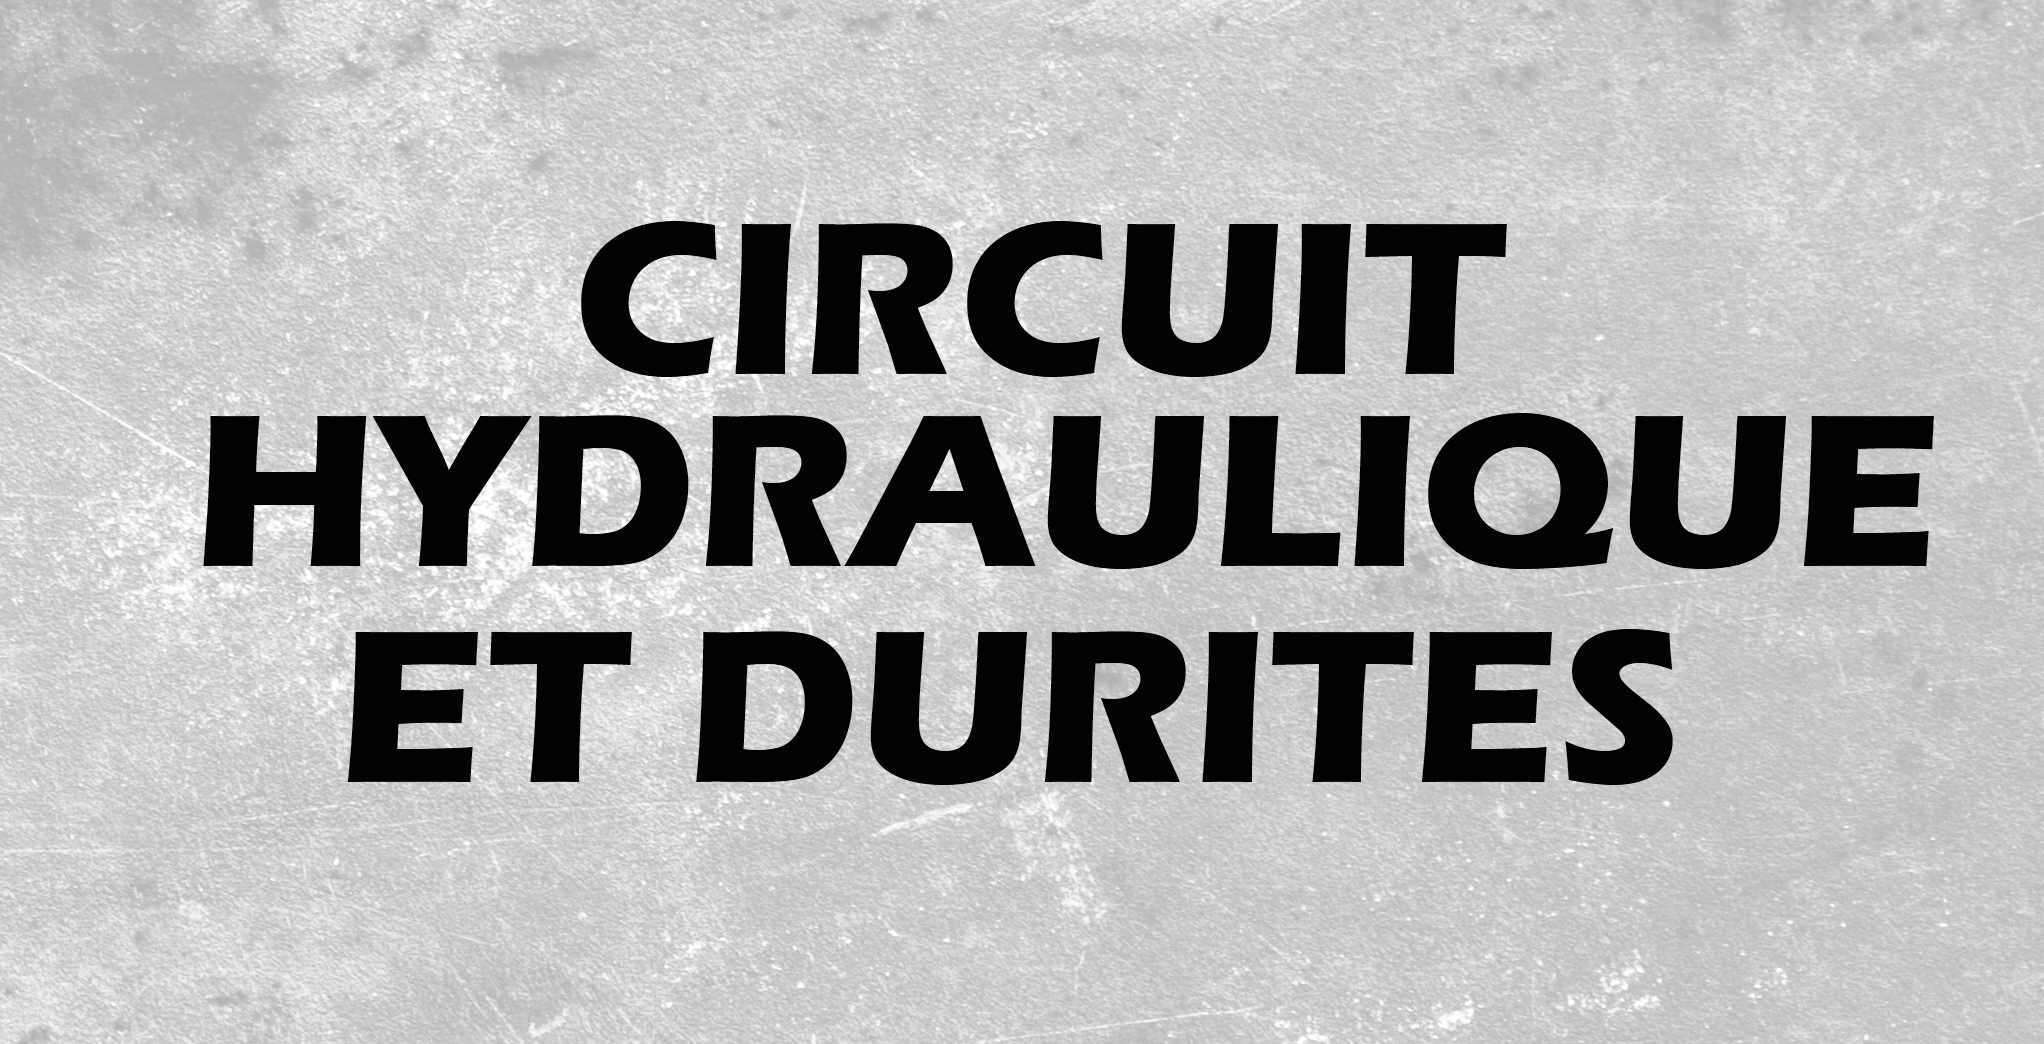 Circuit hydraulique et durites